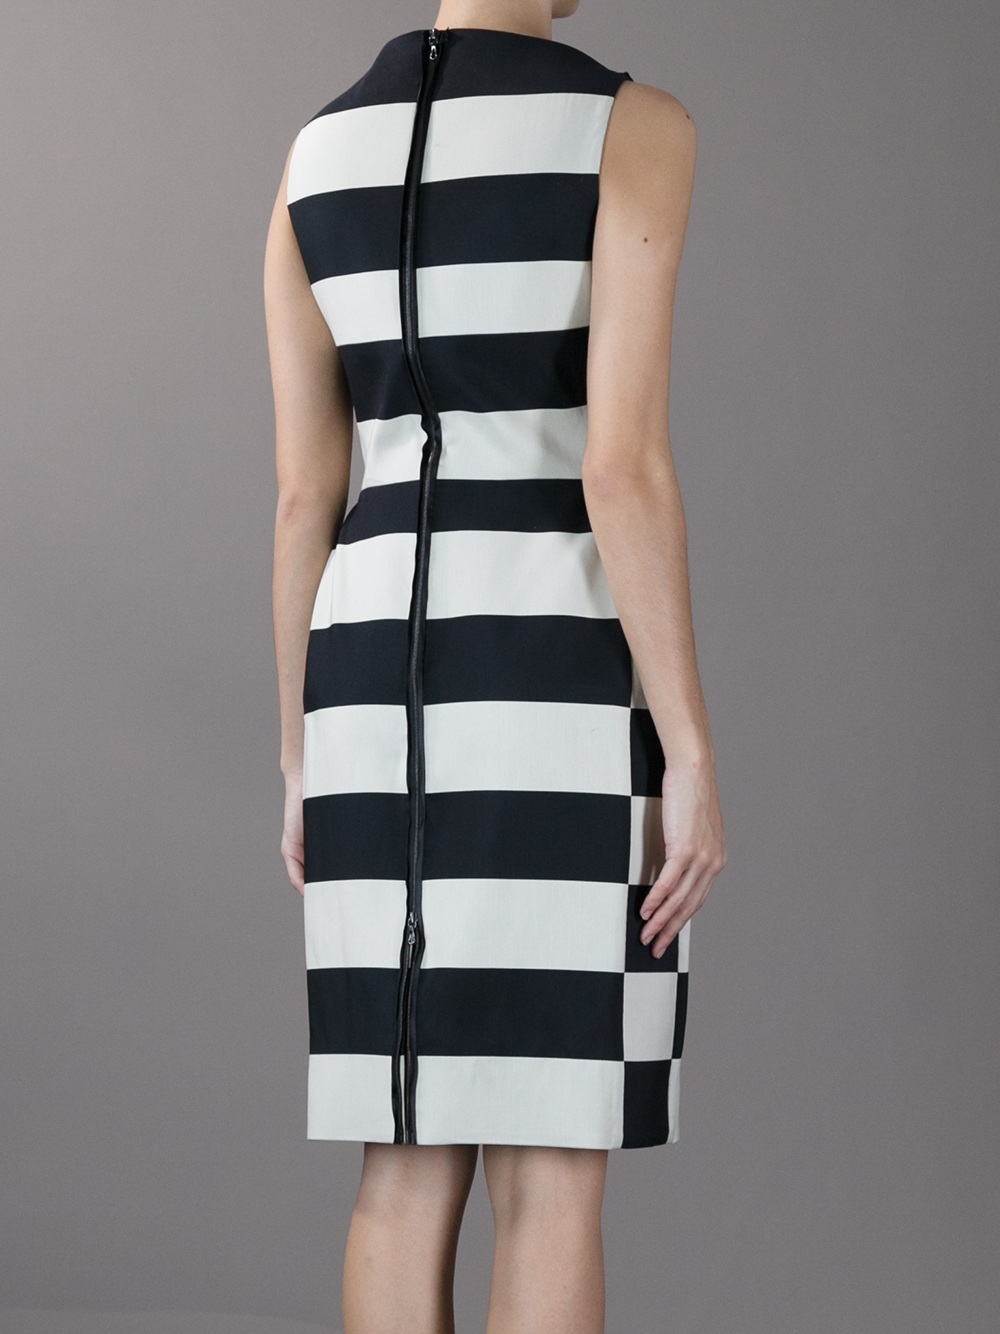 Lanvin Striped Dress in Black - Lyst